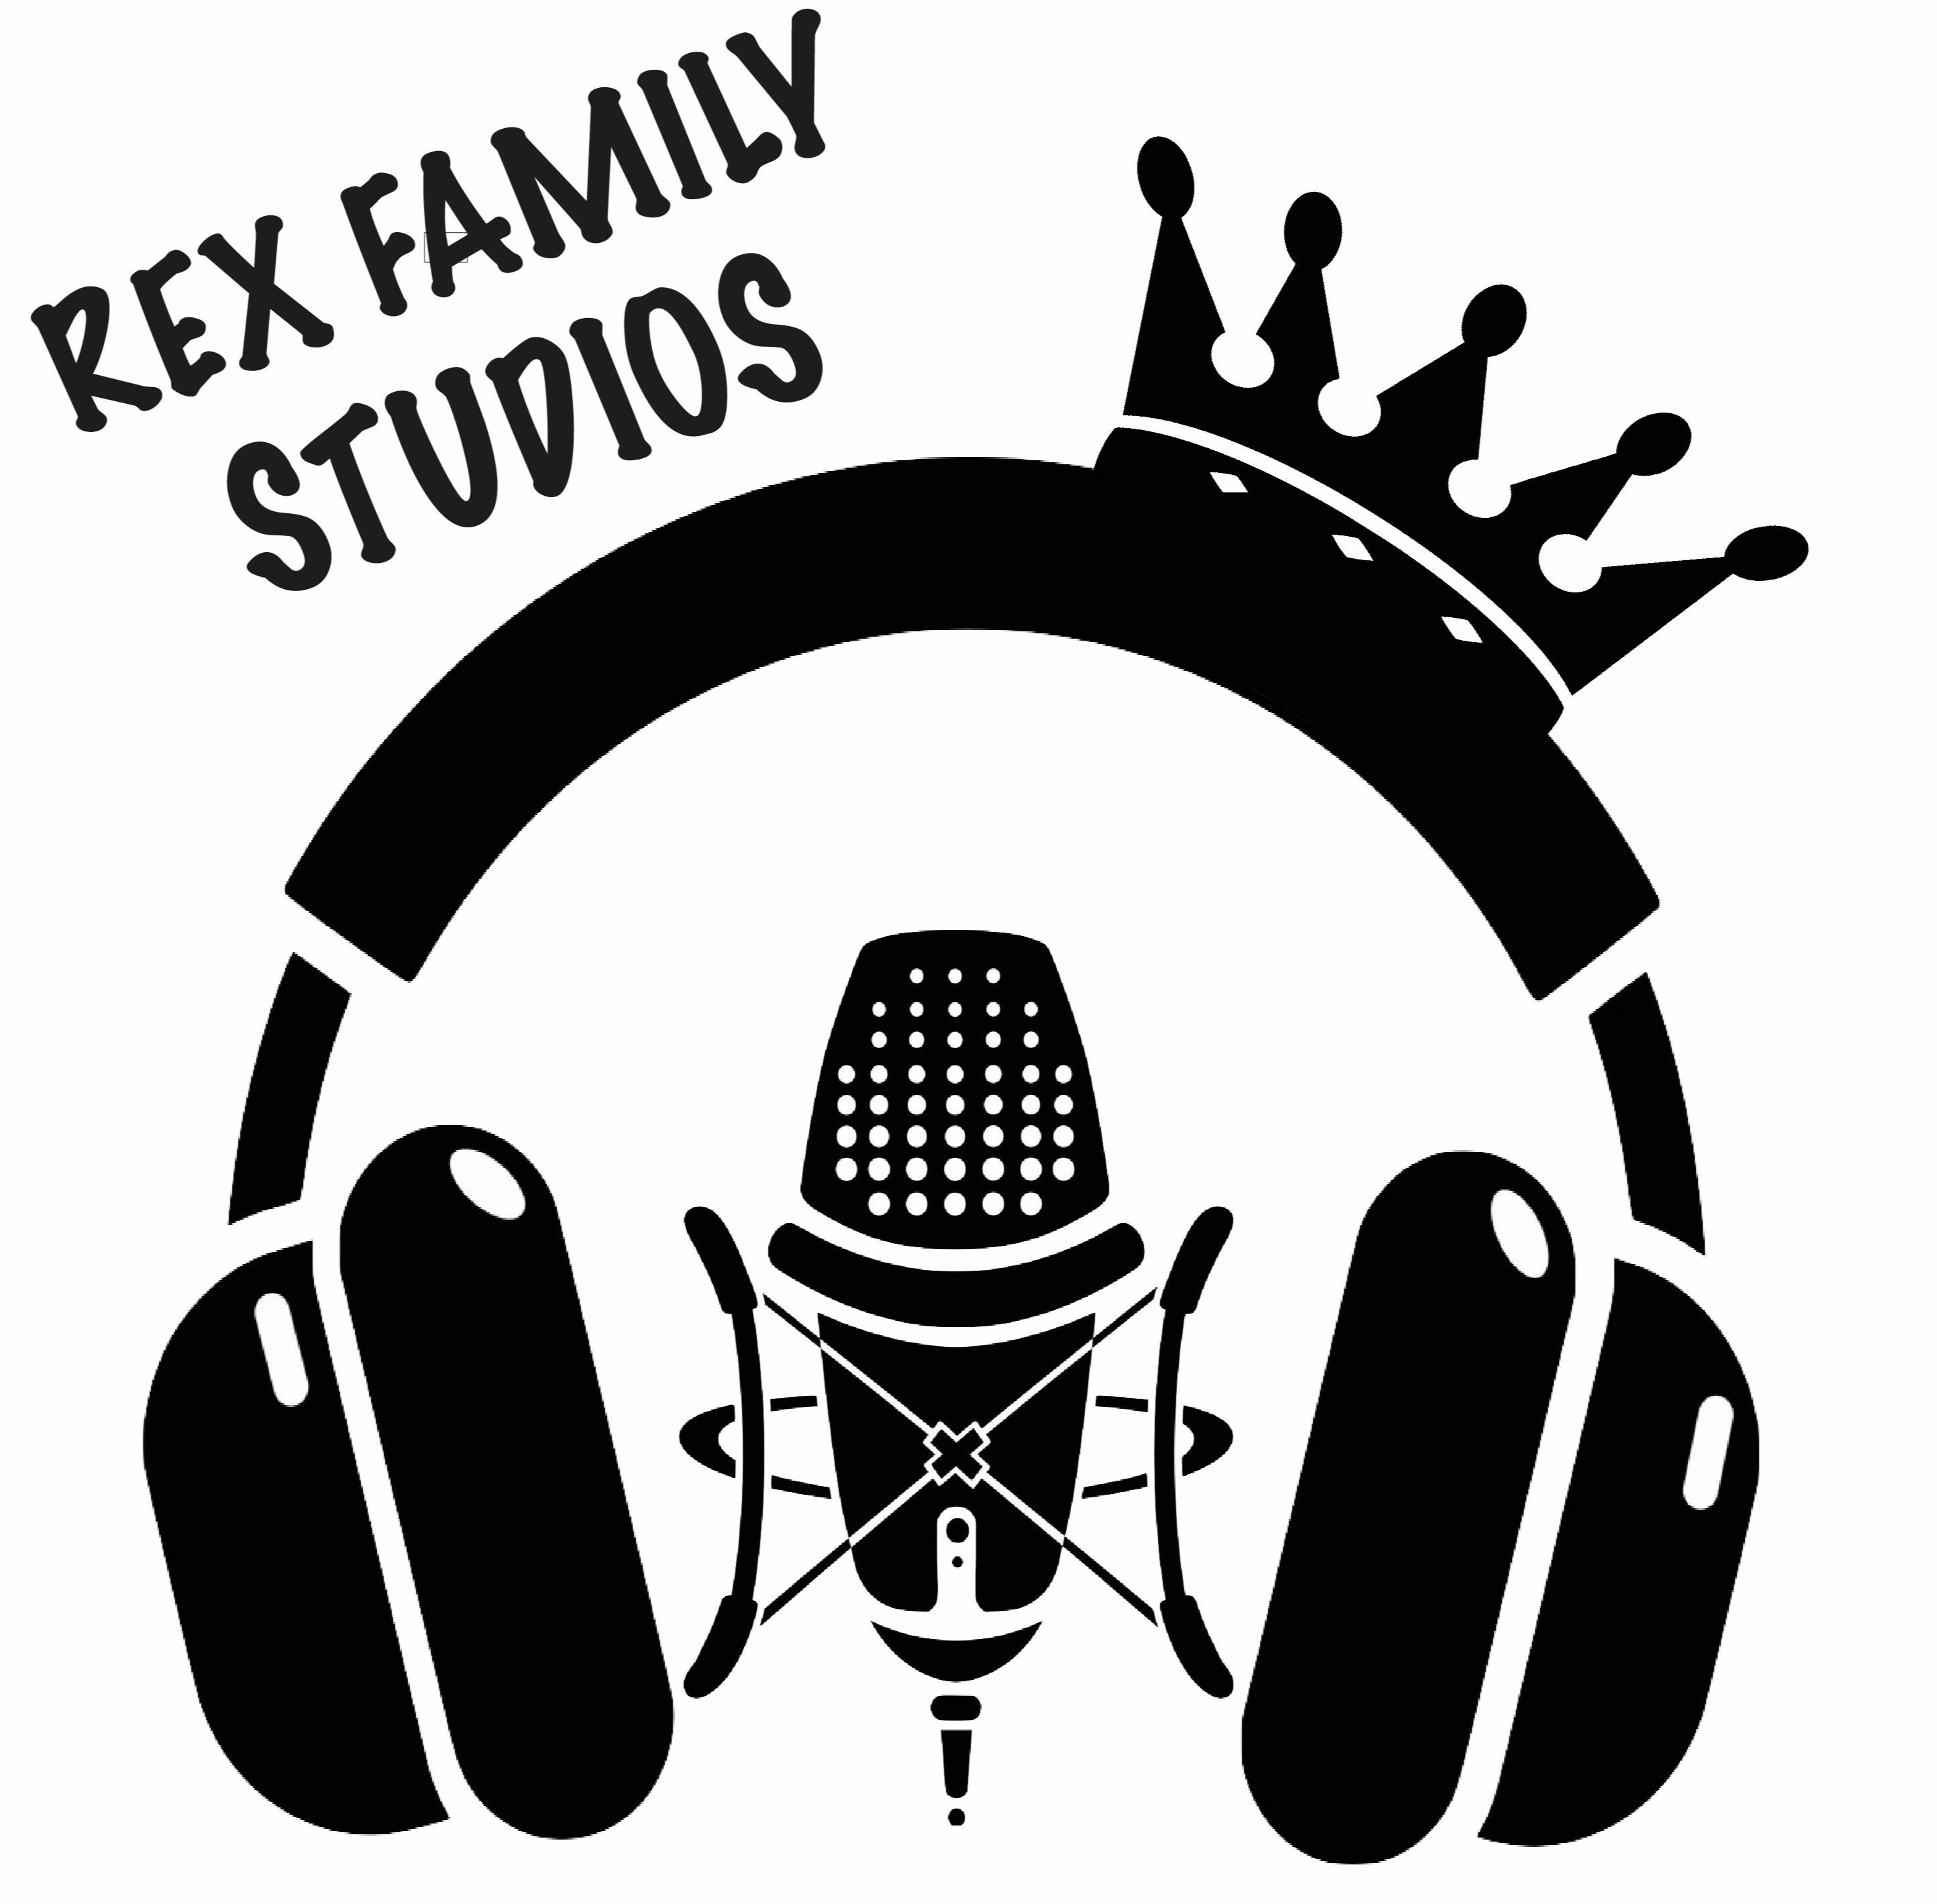 Rex Family Studios